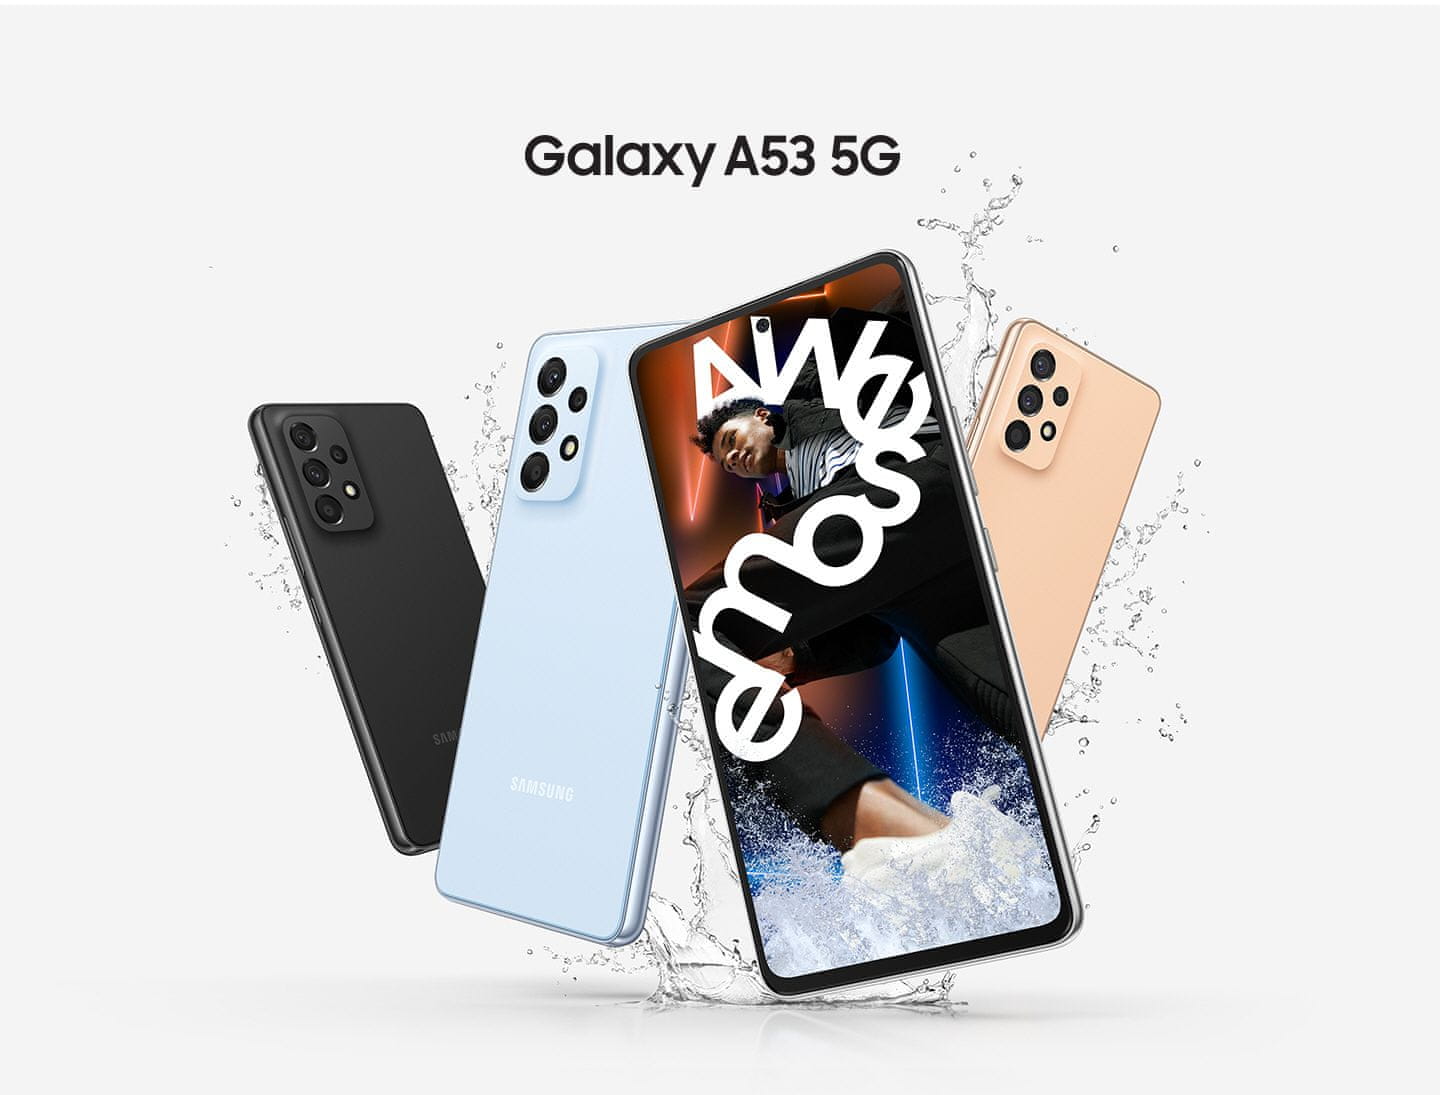 Samsung Galaxy A53 5G, chytrý telefon, vlajková loď 6,5palcový displej AMOLED obnovovací frekvence stabilizace obrazu čtyři fotoaparáty nejrychlejší 5G připojení 5G internet podpora nejrychlejšího připojení Gorilla Glass IP67 NFC